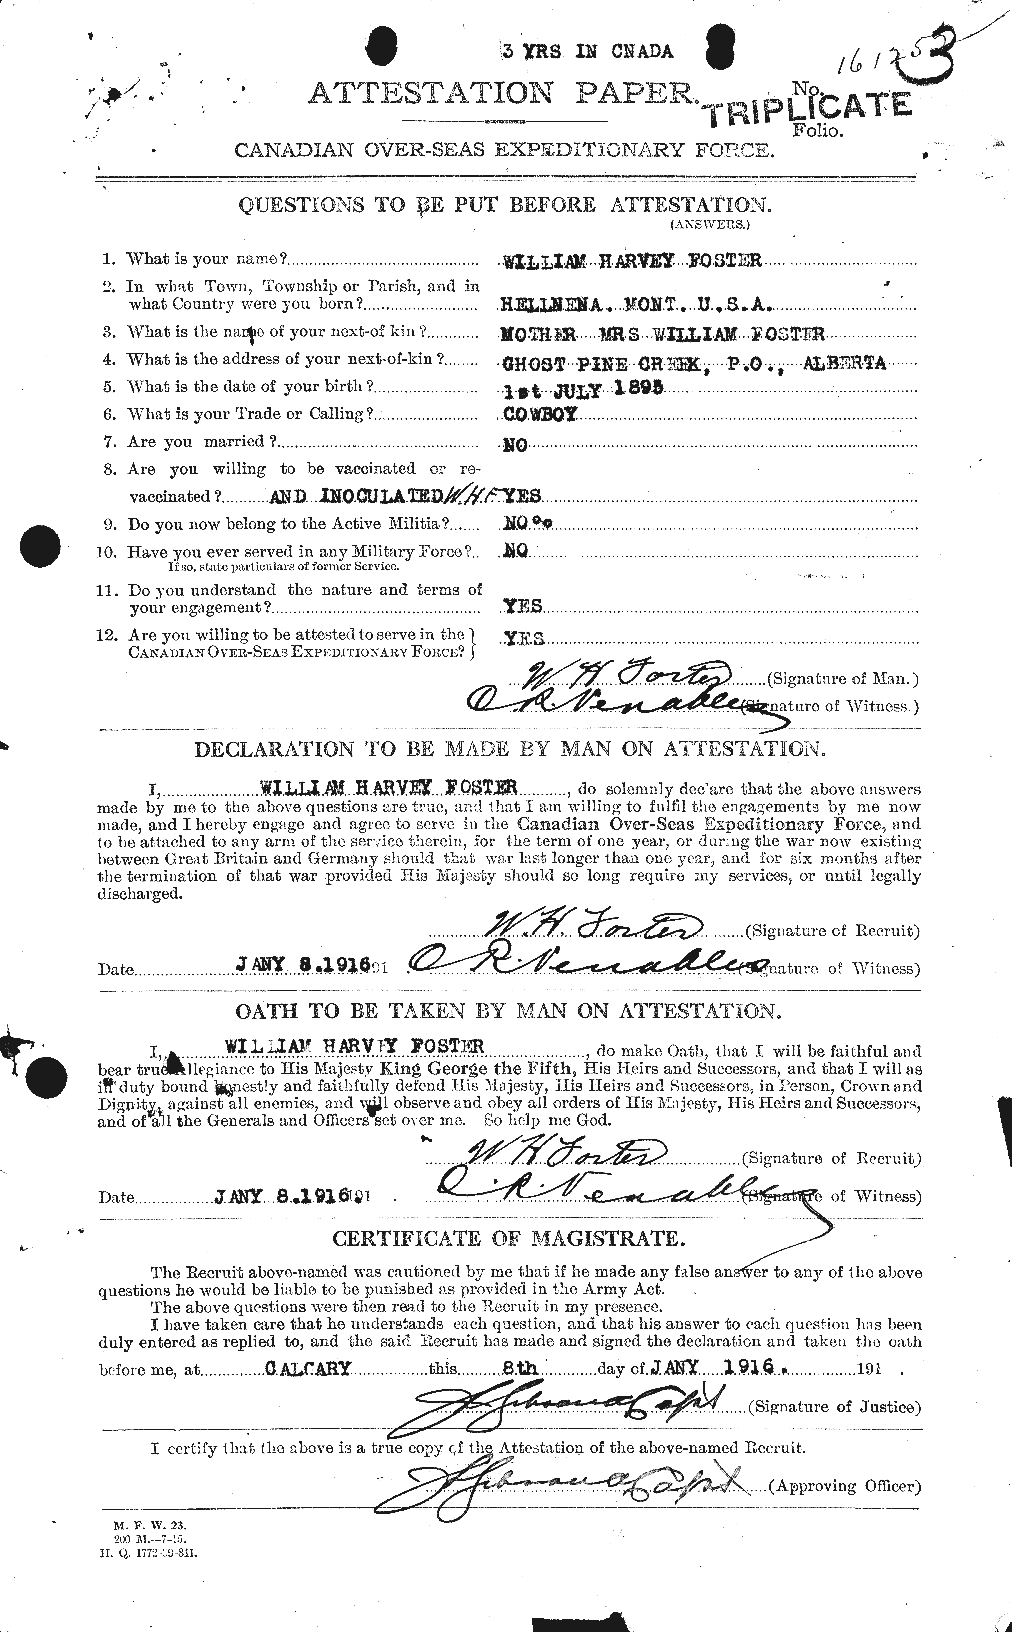 Dossiers du Personnel de la Première Guerre mondiale - CEC 328749a